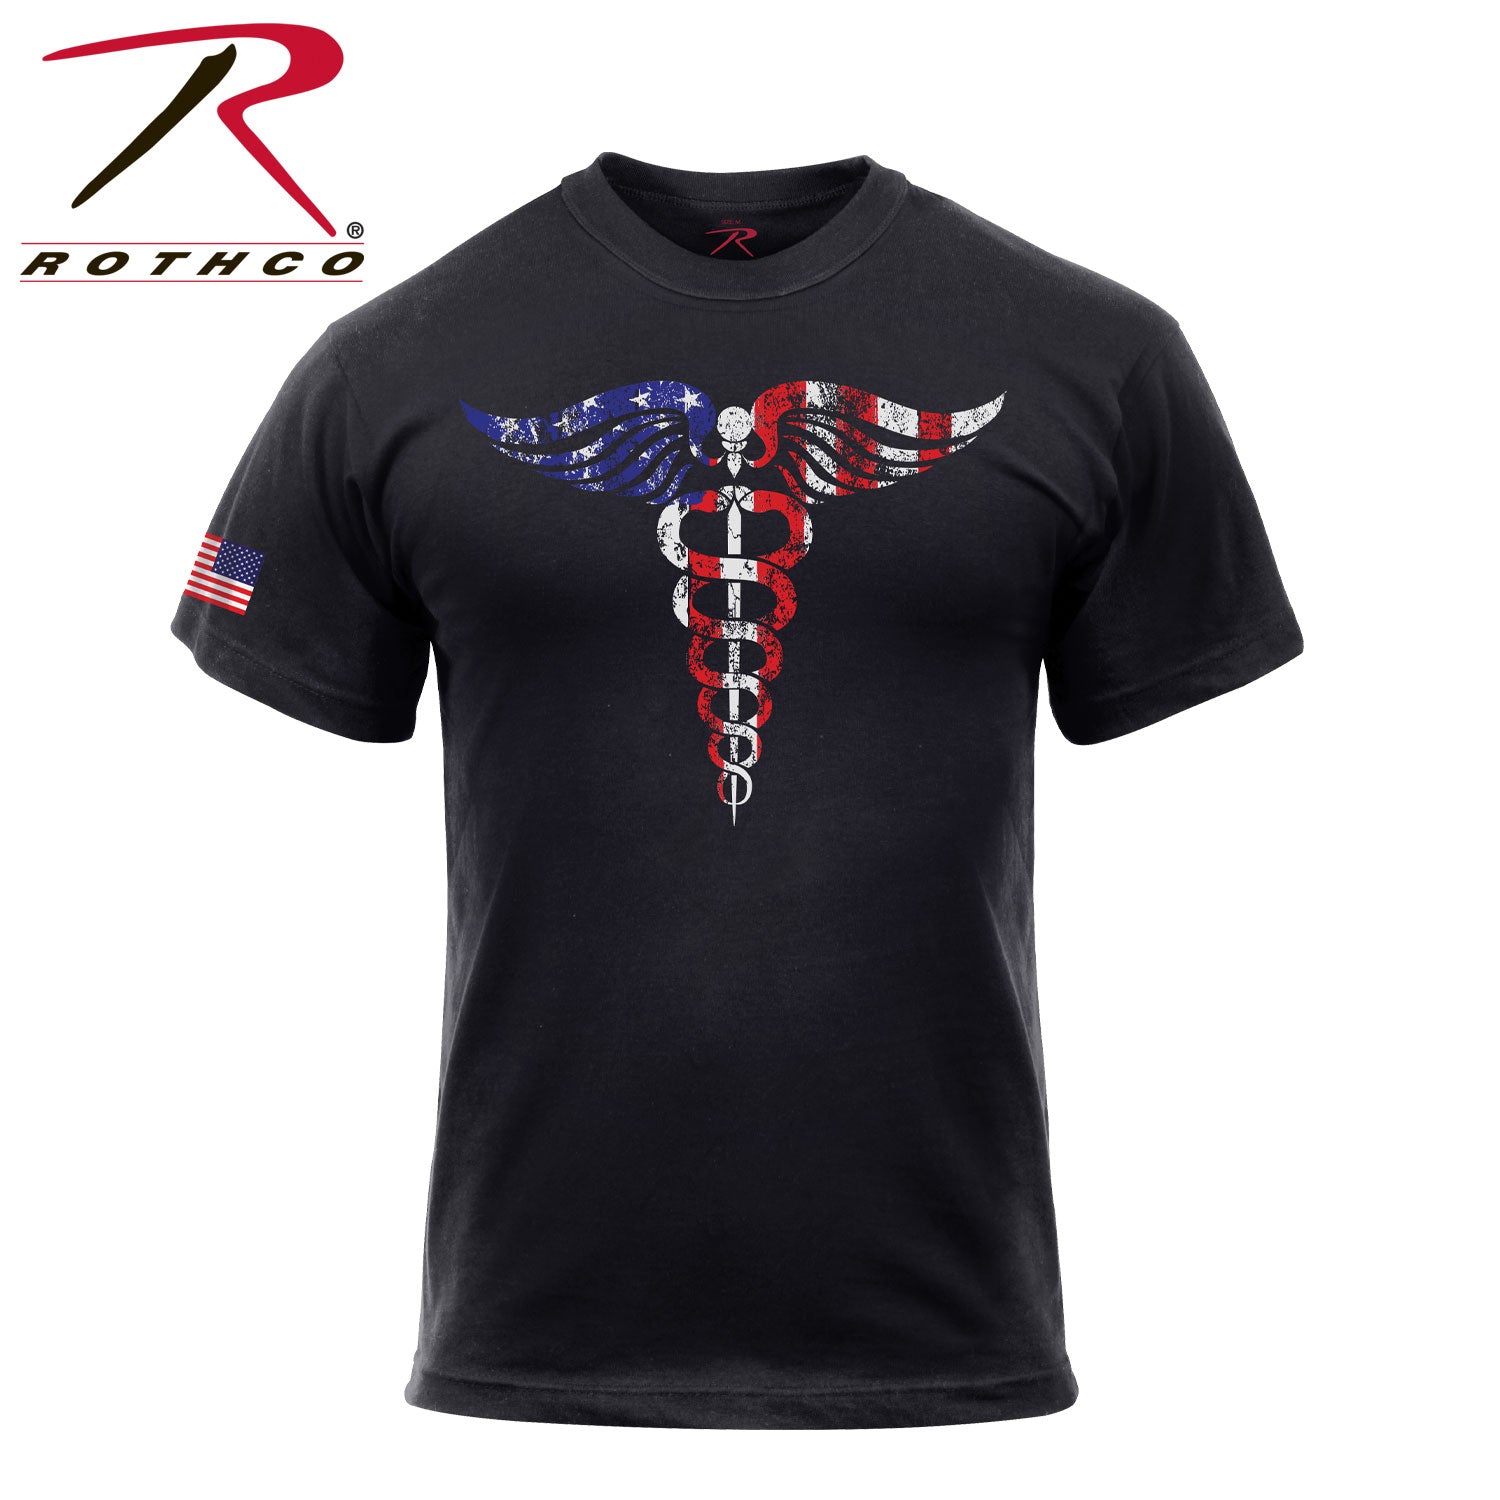 Rothco Medical Symbol (Caduceus) T-Shirt